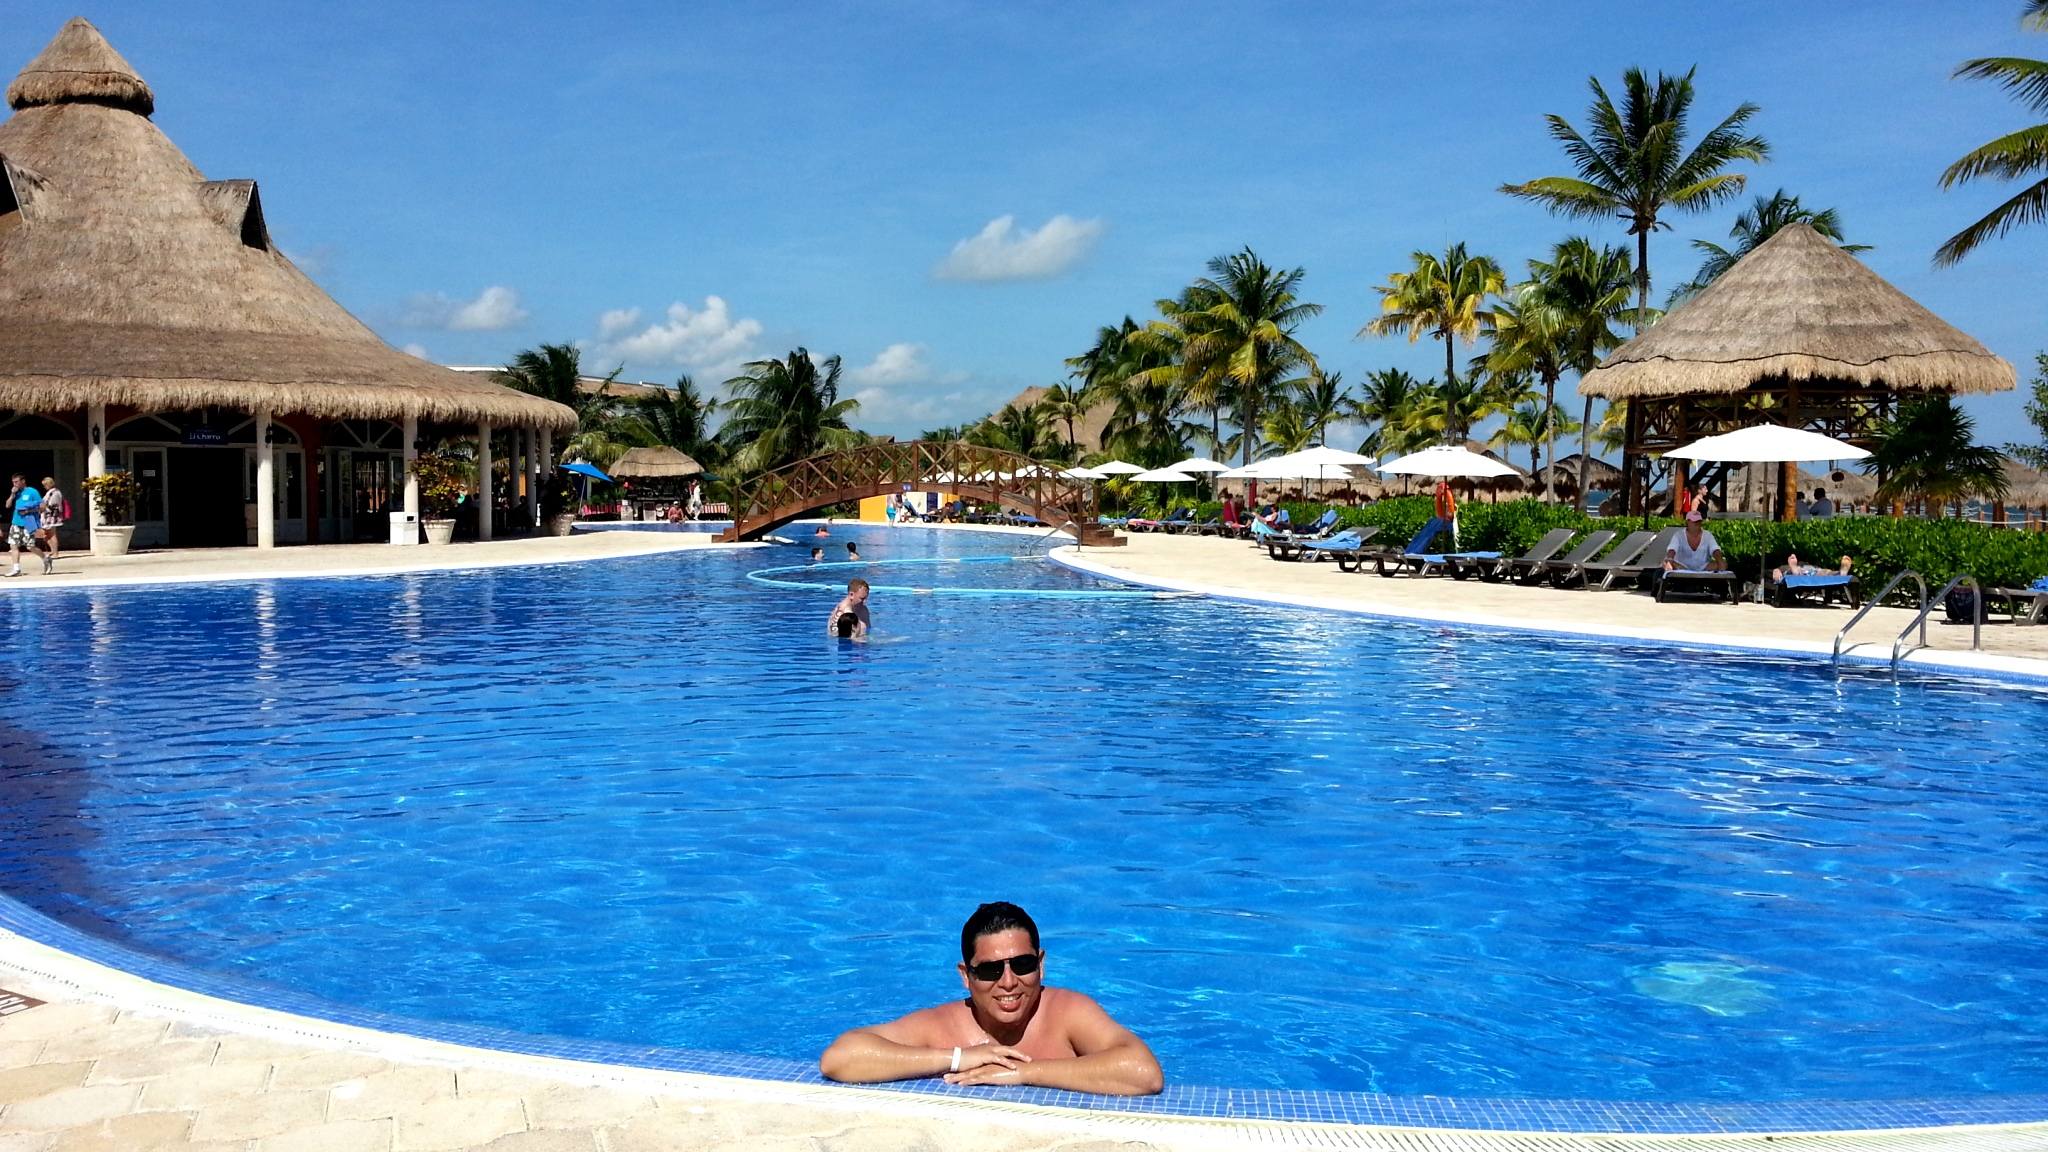 Lima a Riviera Maya: Cancun, Coco Bongo, Xcaret, Playas y diversión. ¿Cómo llegar? ¿Qué hacer? y ¿Cuanto cuesta?